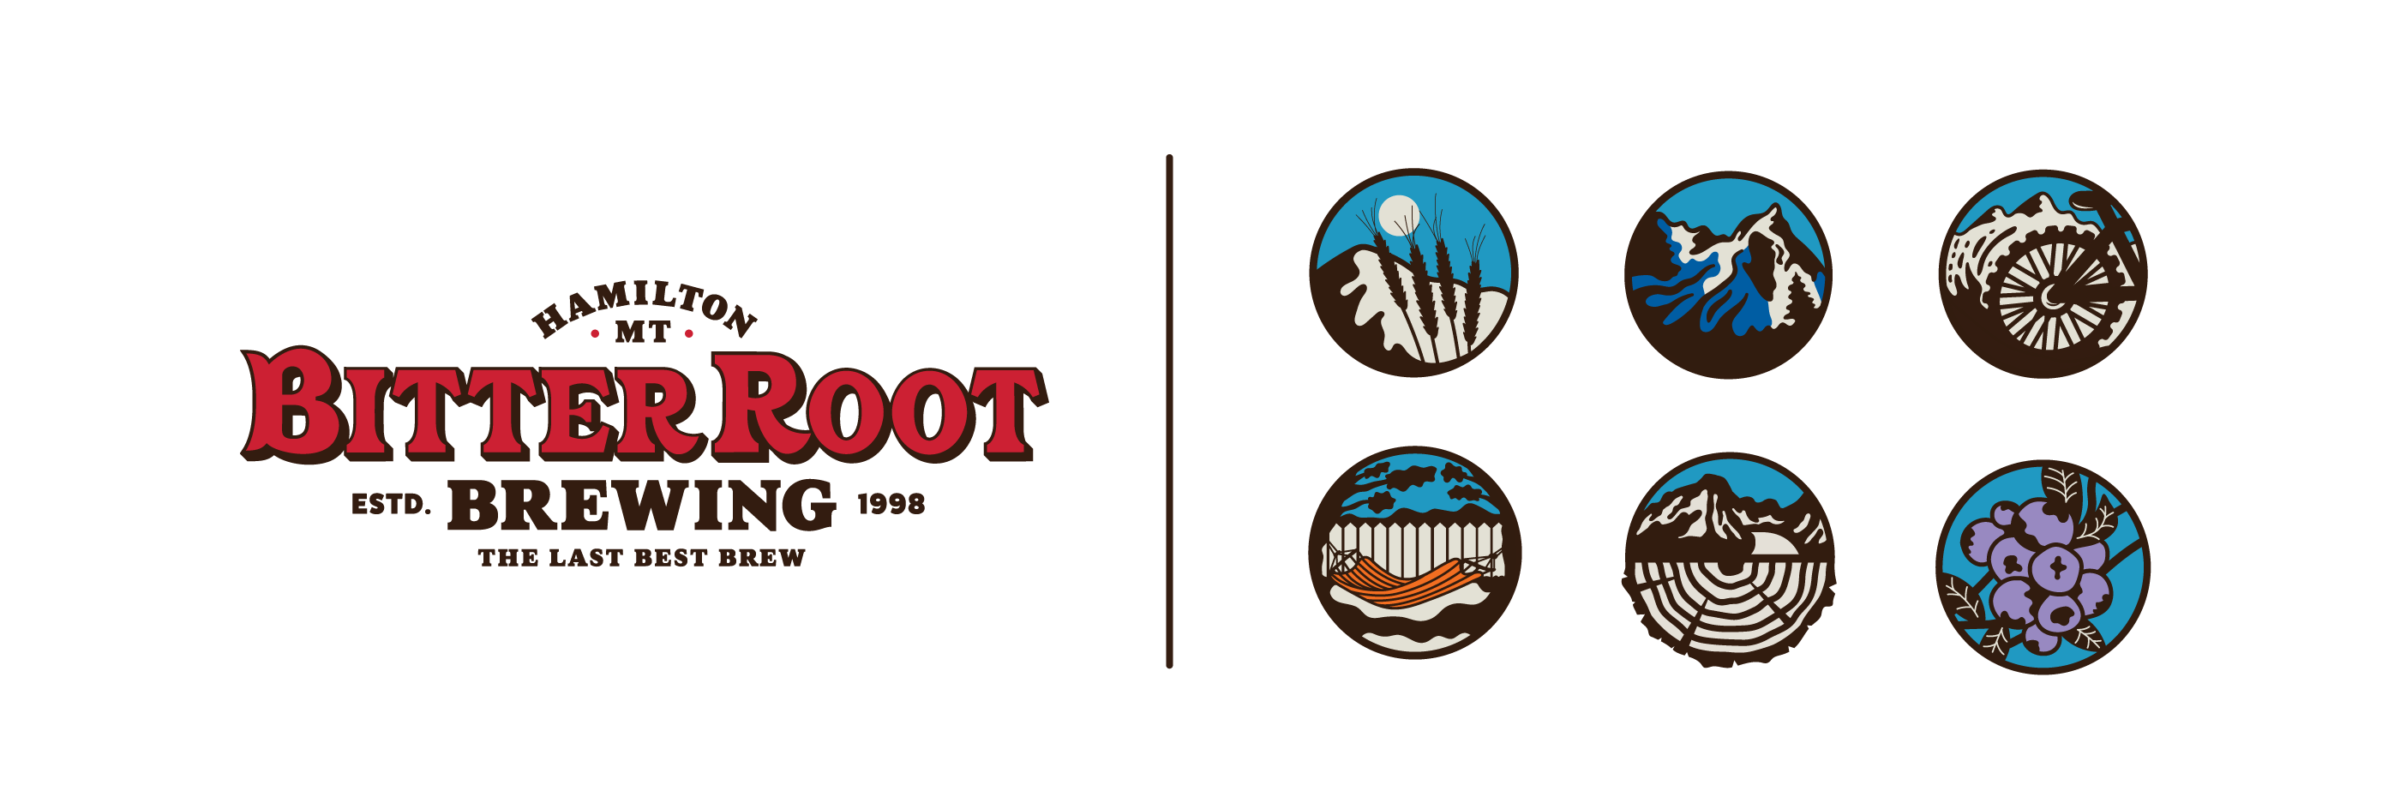 Refreshing BitterRoot Brewery's Brand CODO Design